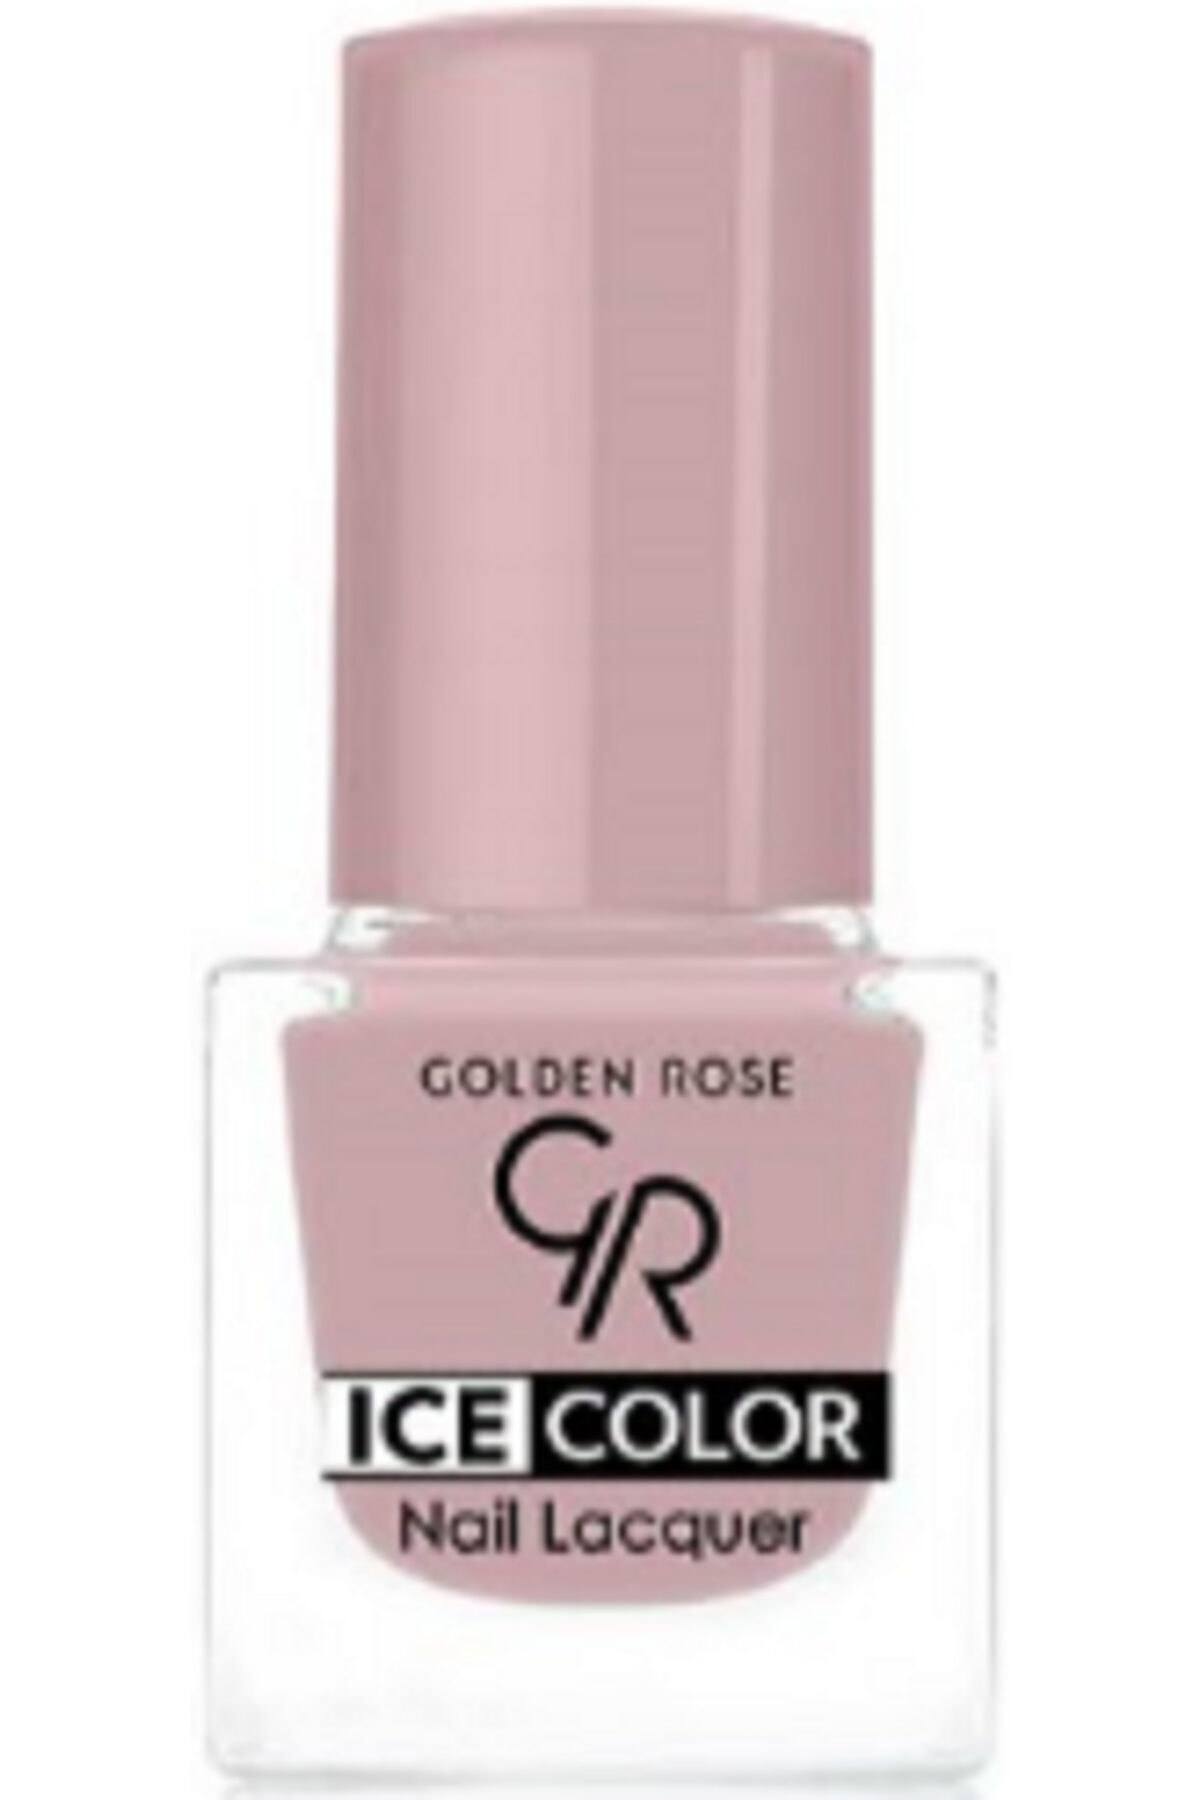 لاک ناخن یخی آیس چیک ICE شماره 144 رنگ نارنجی گلدن رز Golden Rose